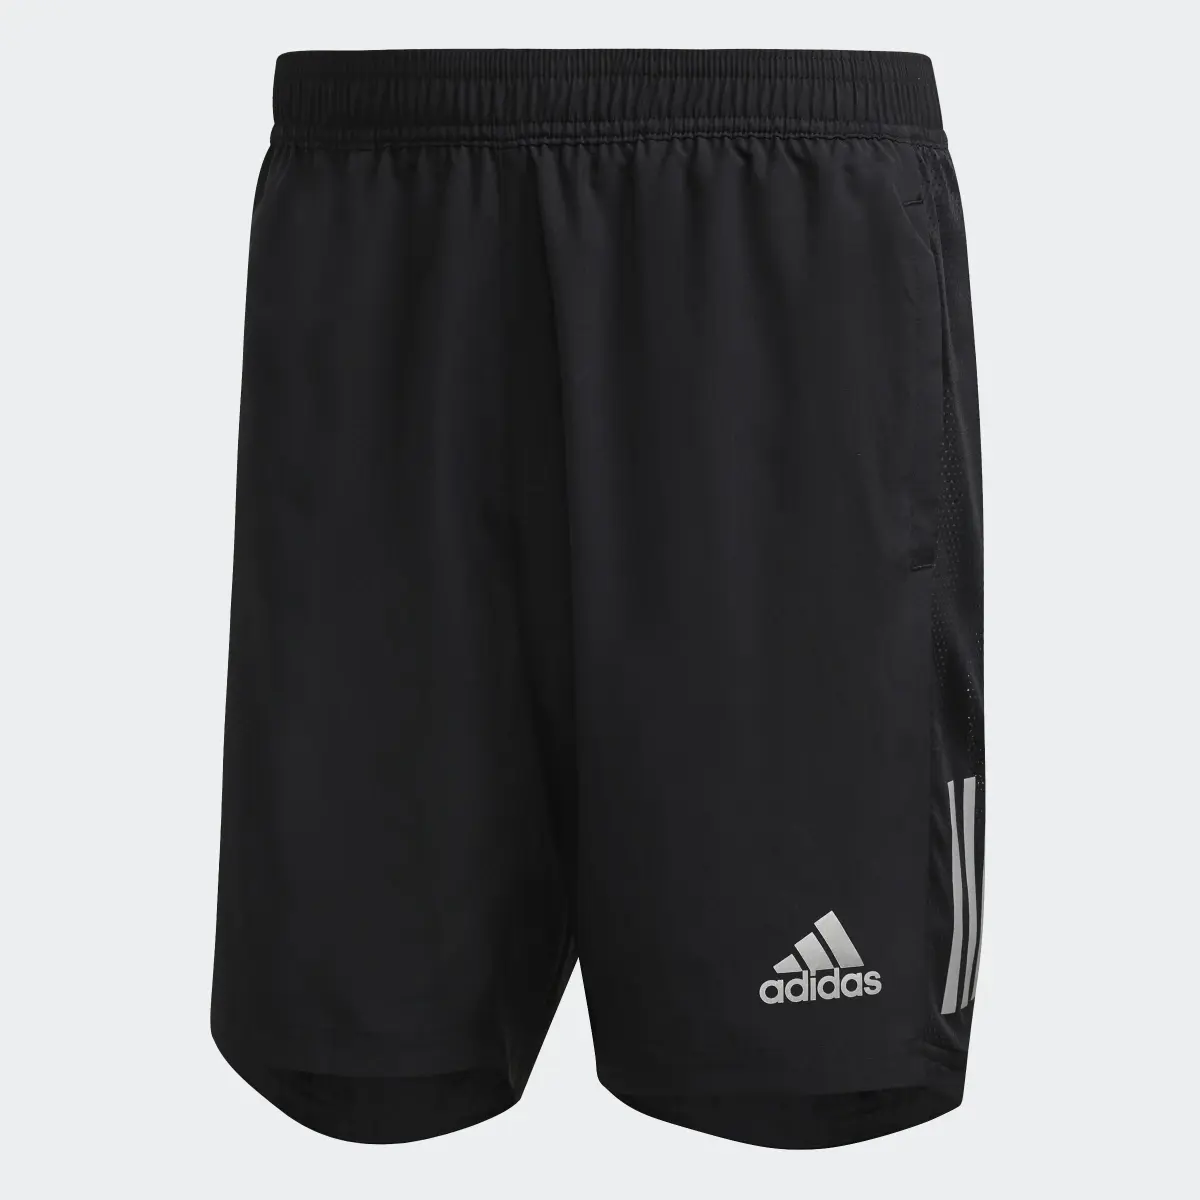 Adidas Own the Run Shorts. 1